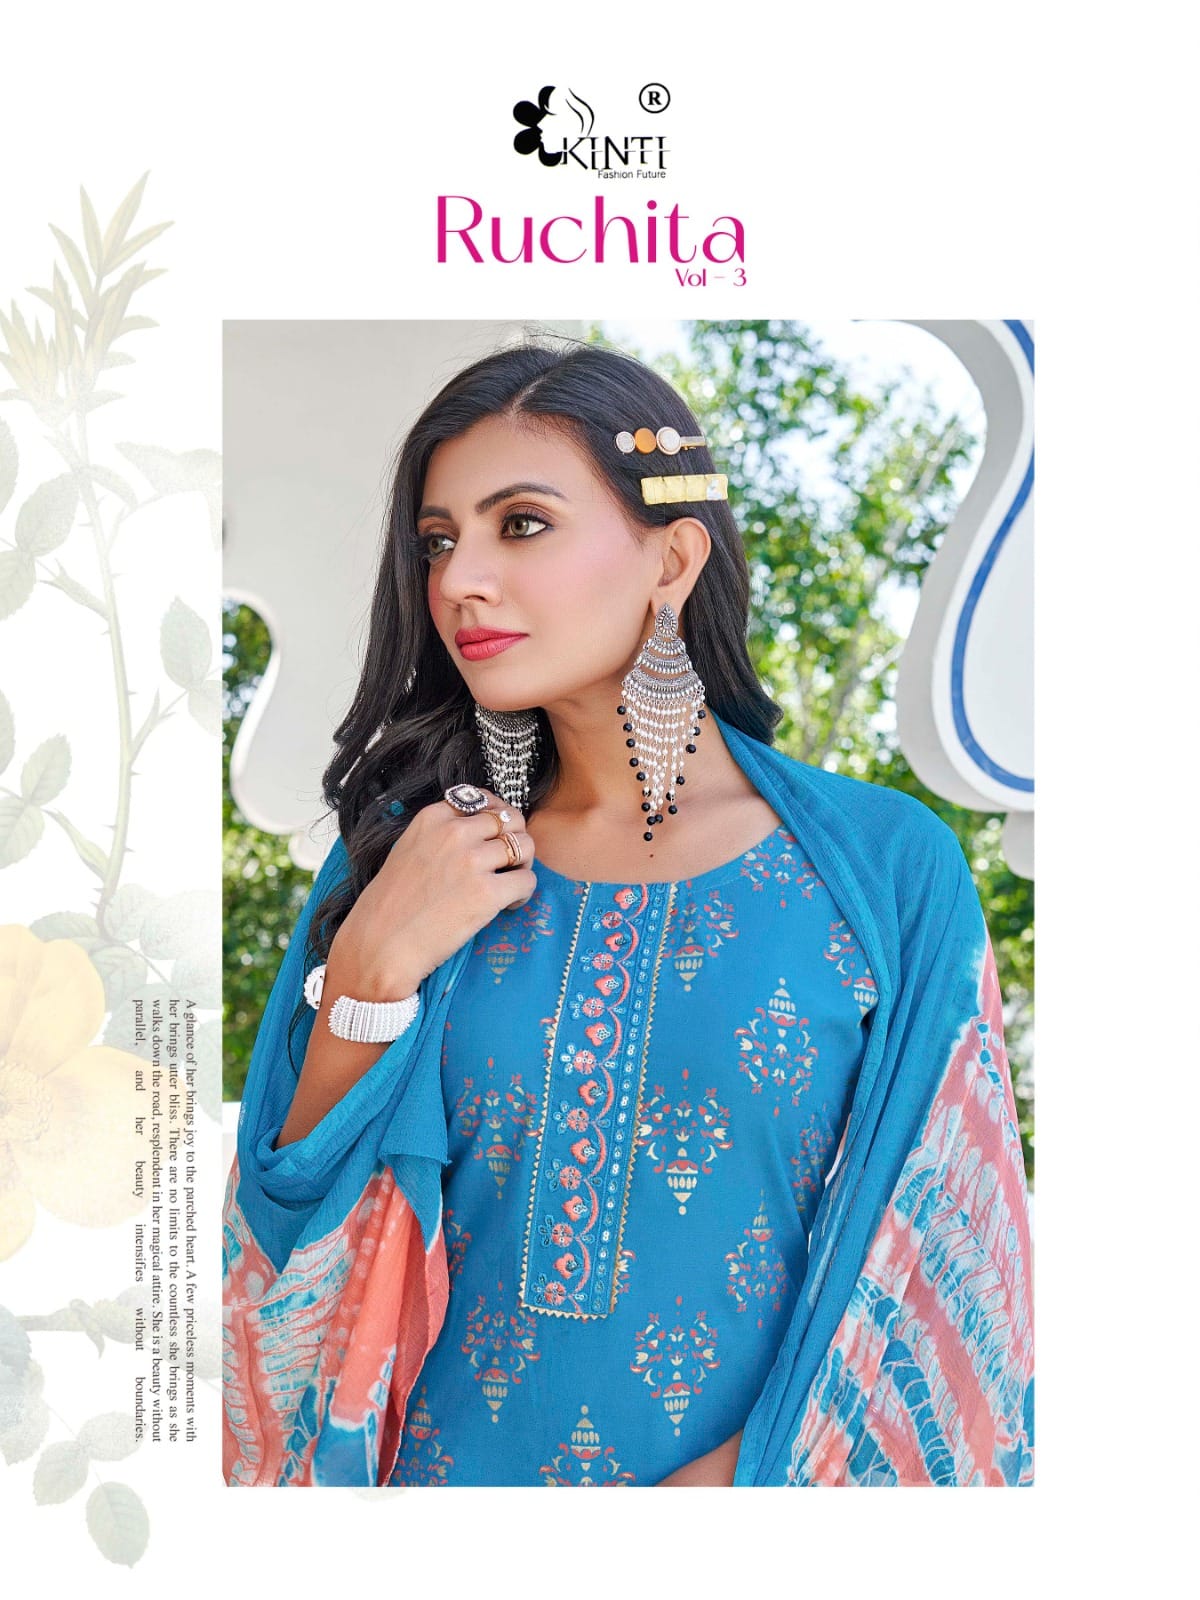 Ruchita Vol 3 Kinti Rayon Readymade Plazzo Style Suits